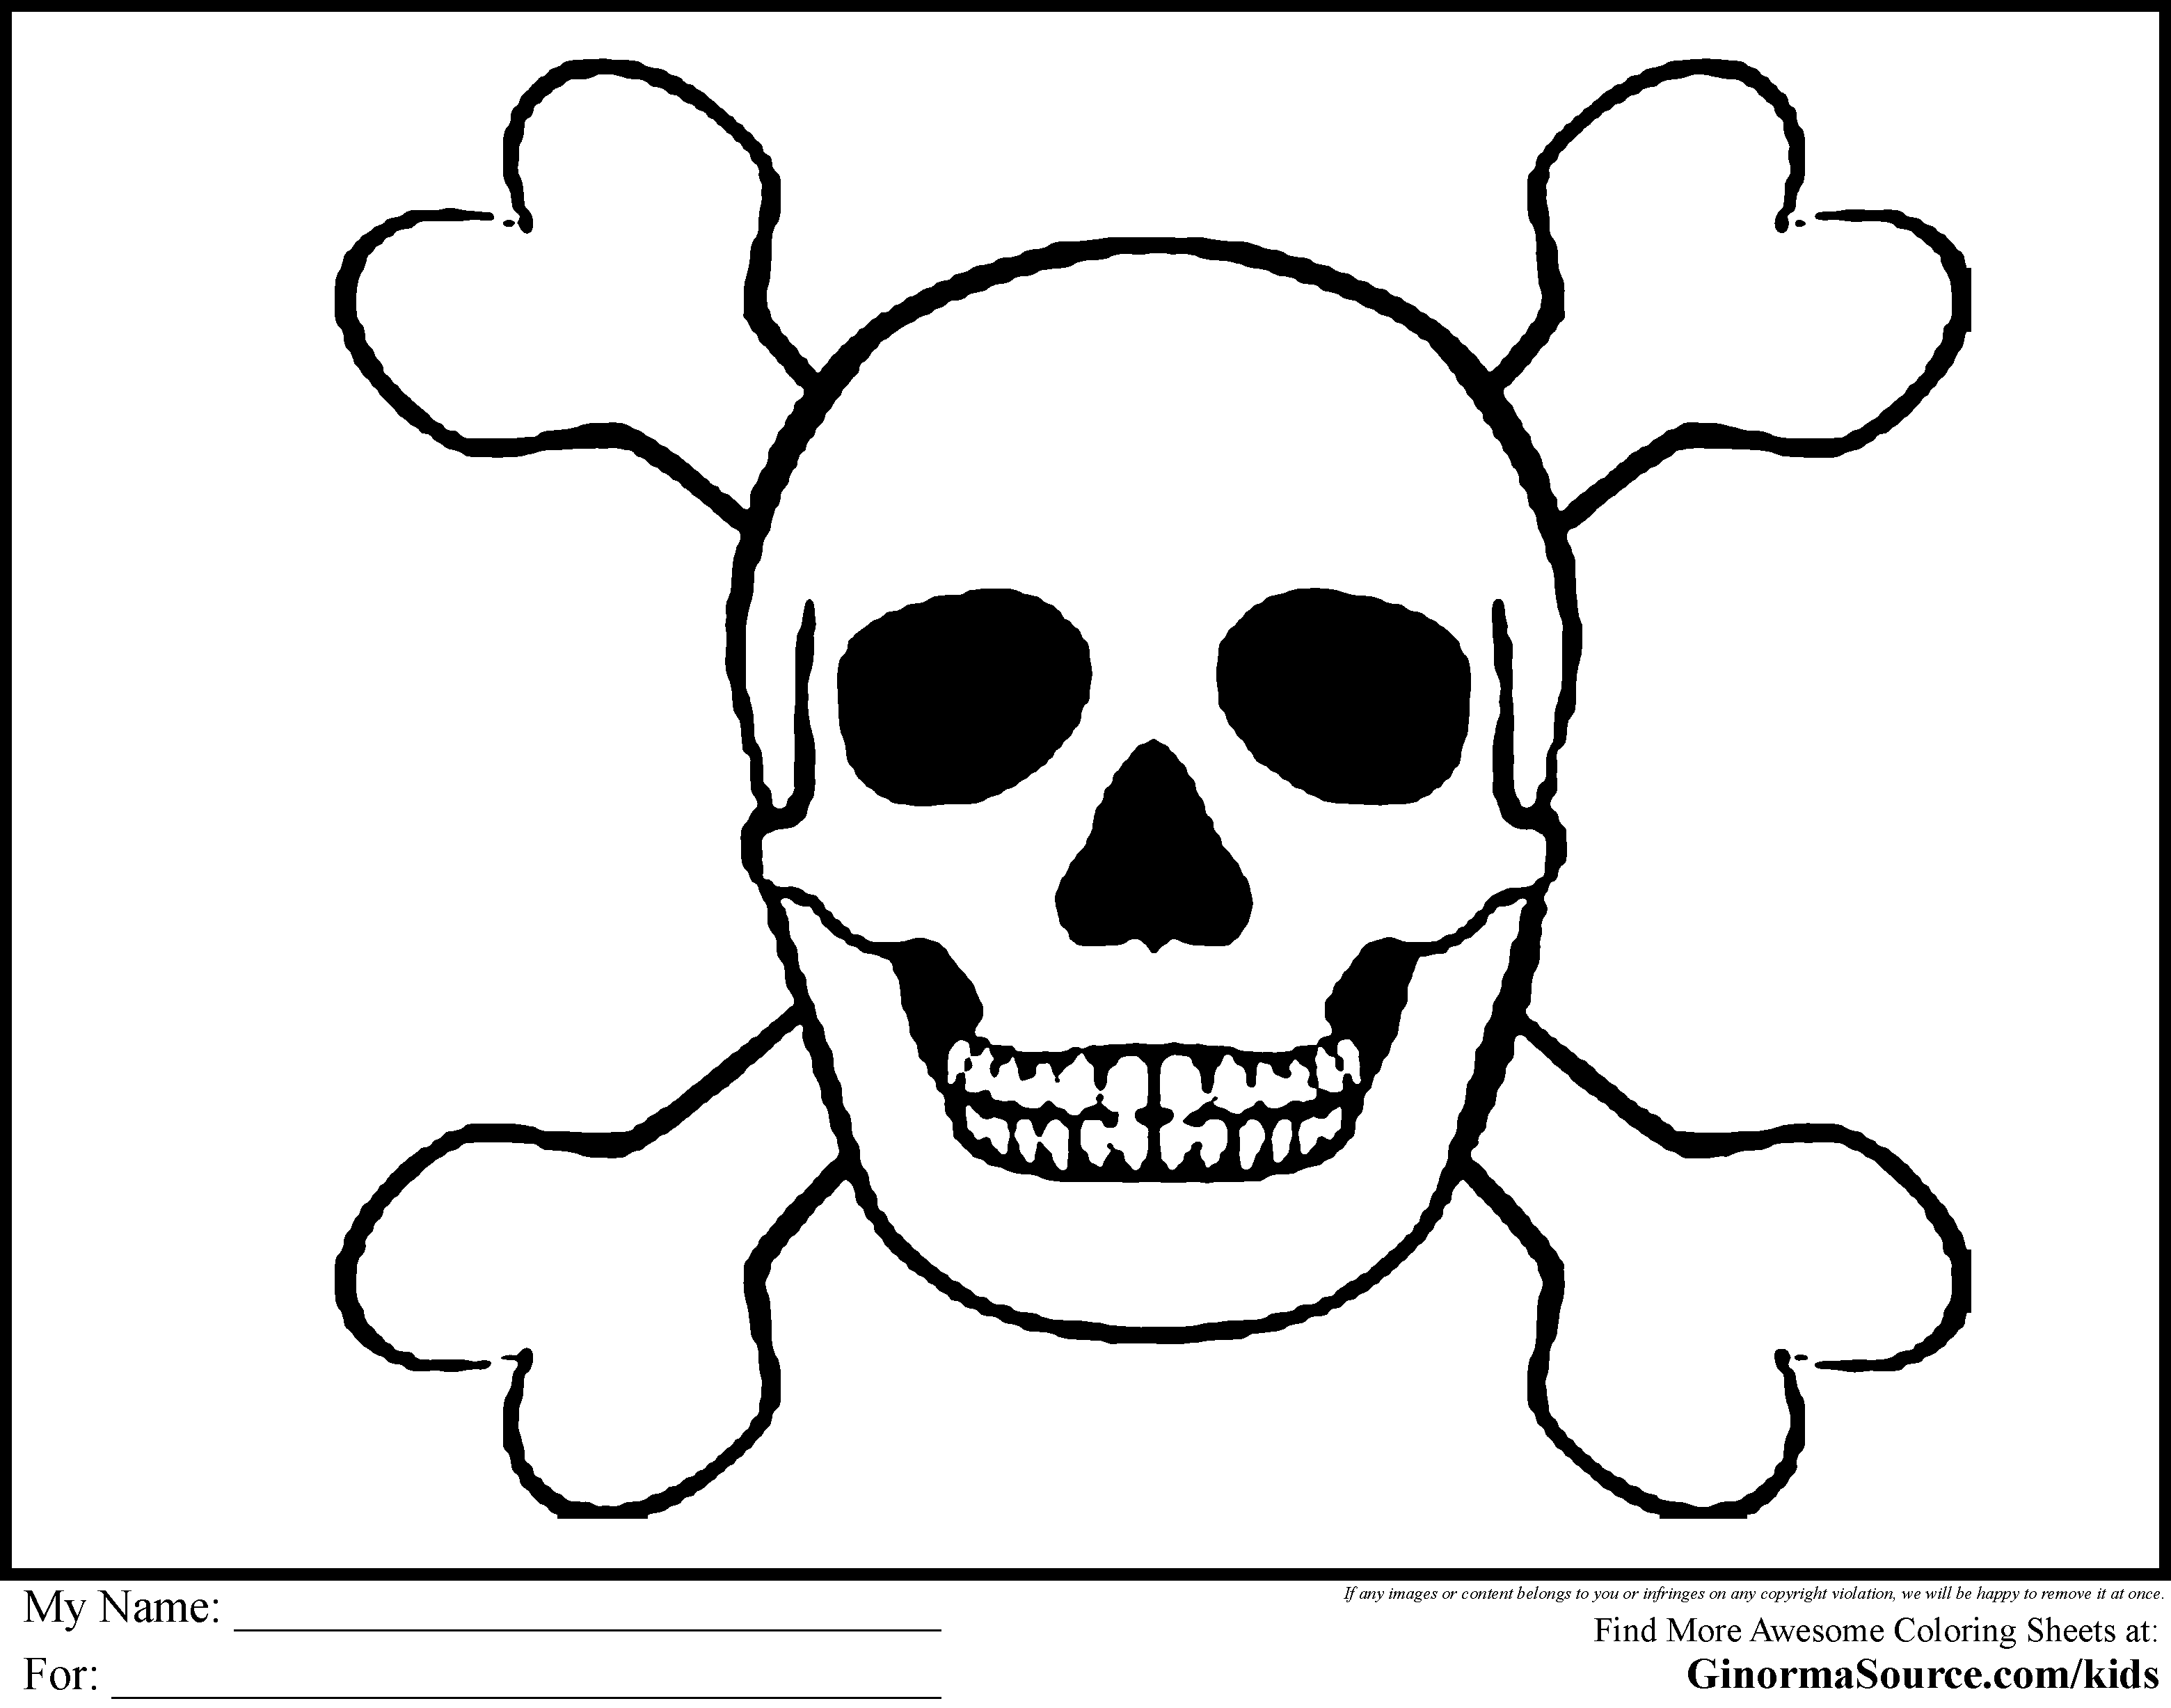 Пиратский череп раскраска